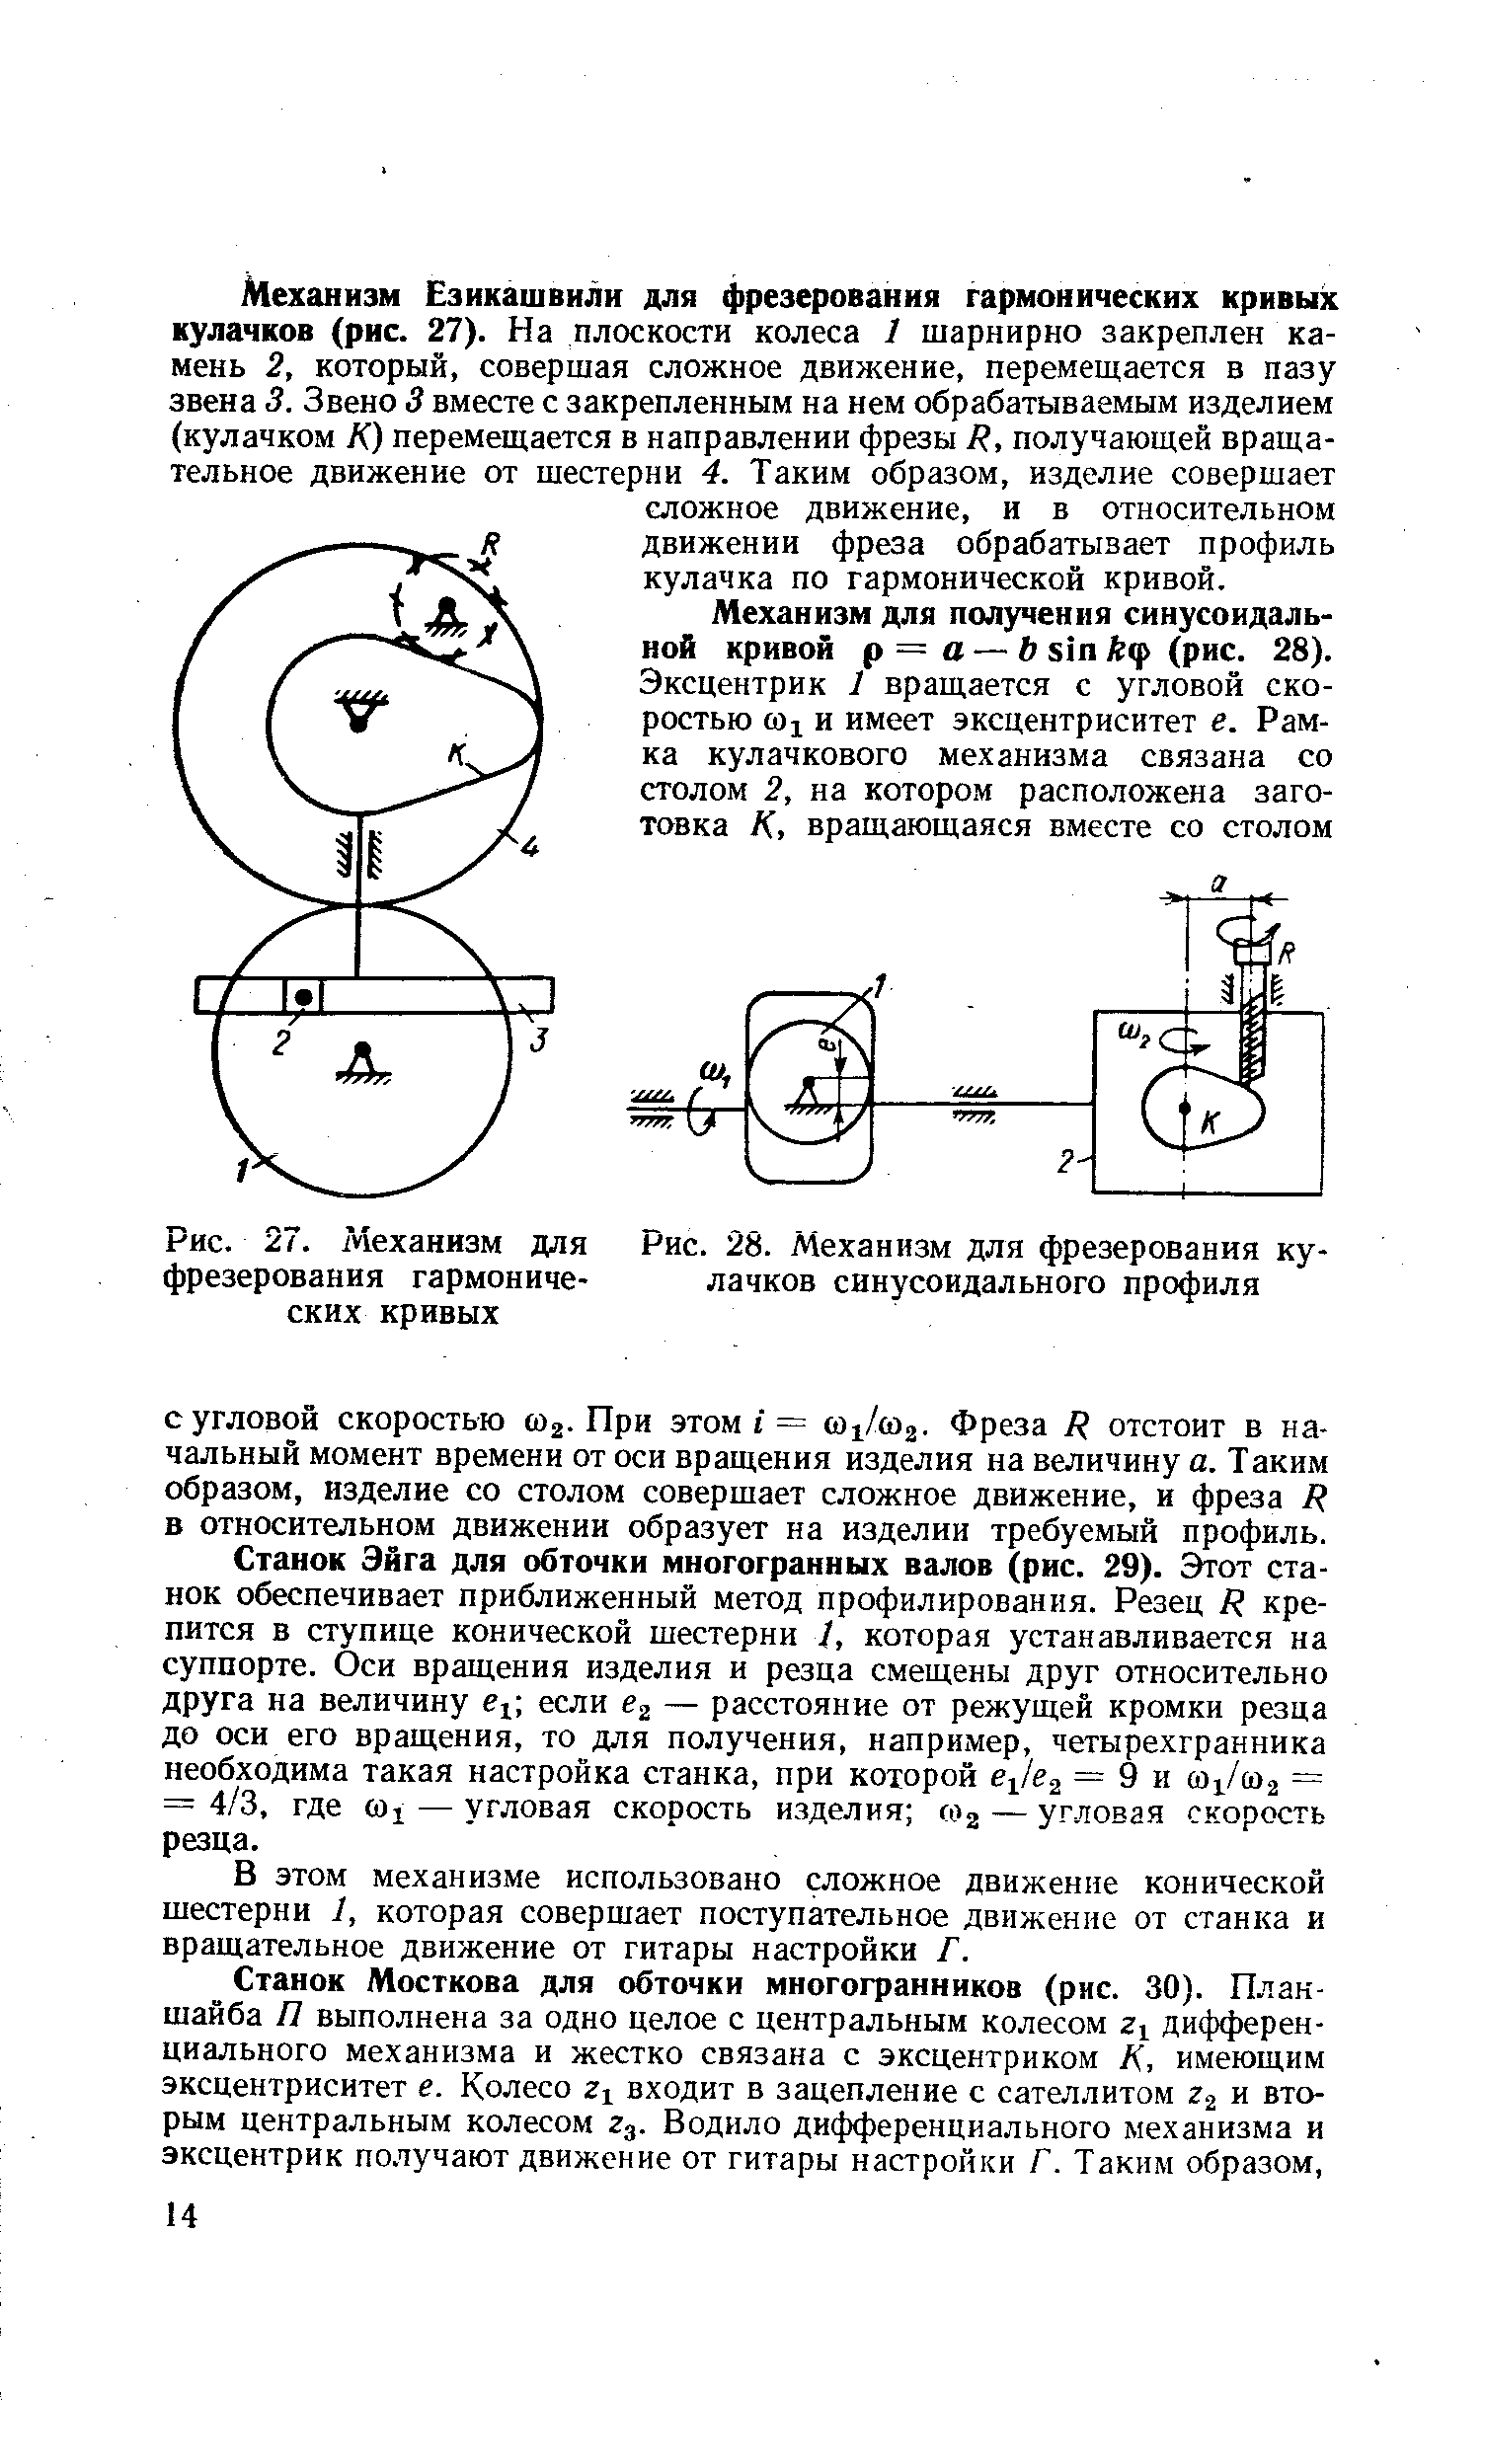 Рис. 27. Механизм для фрезерования гармонических кривых
